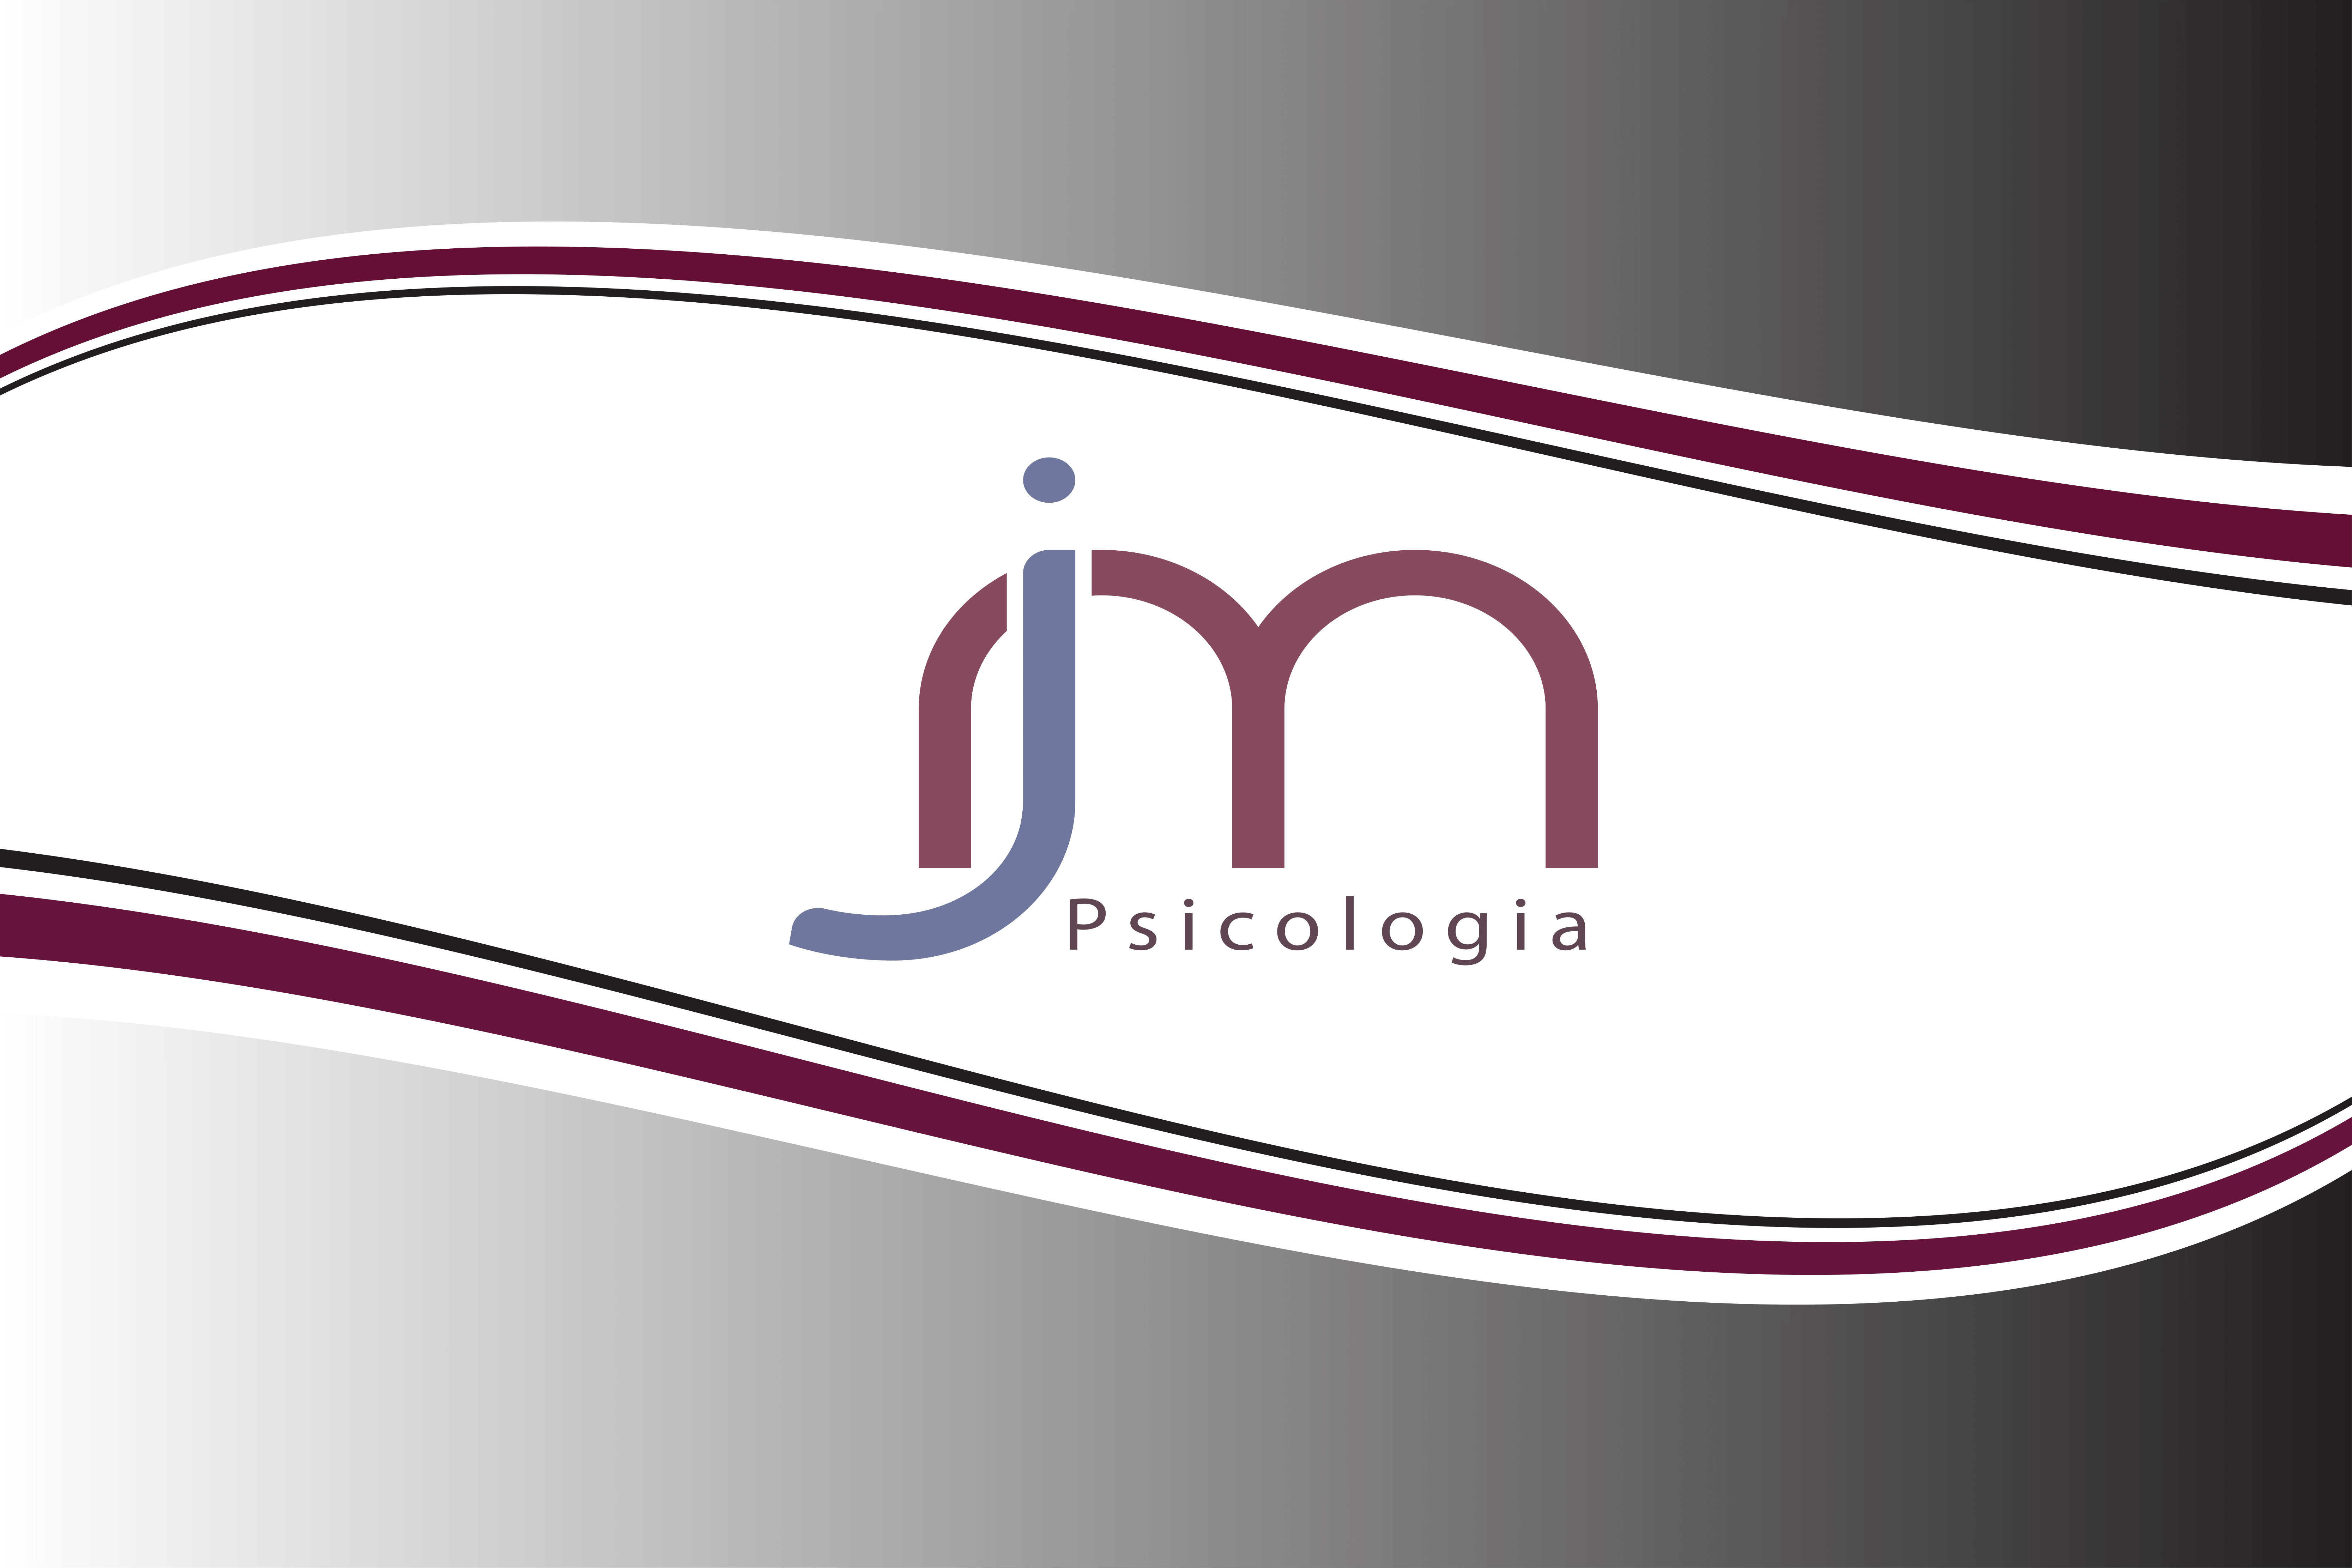 El psicòleg a Barcelona - Psicòloga Barcelona - Dra. Judit March